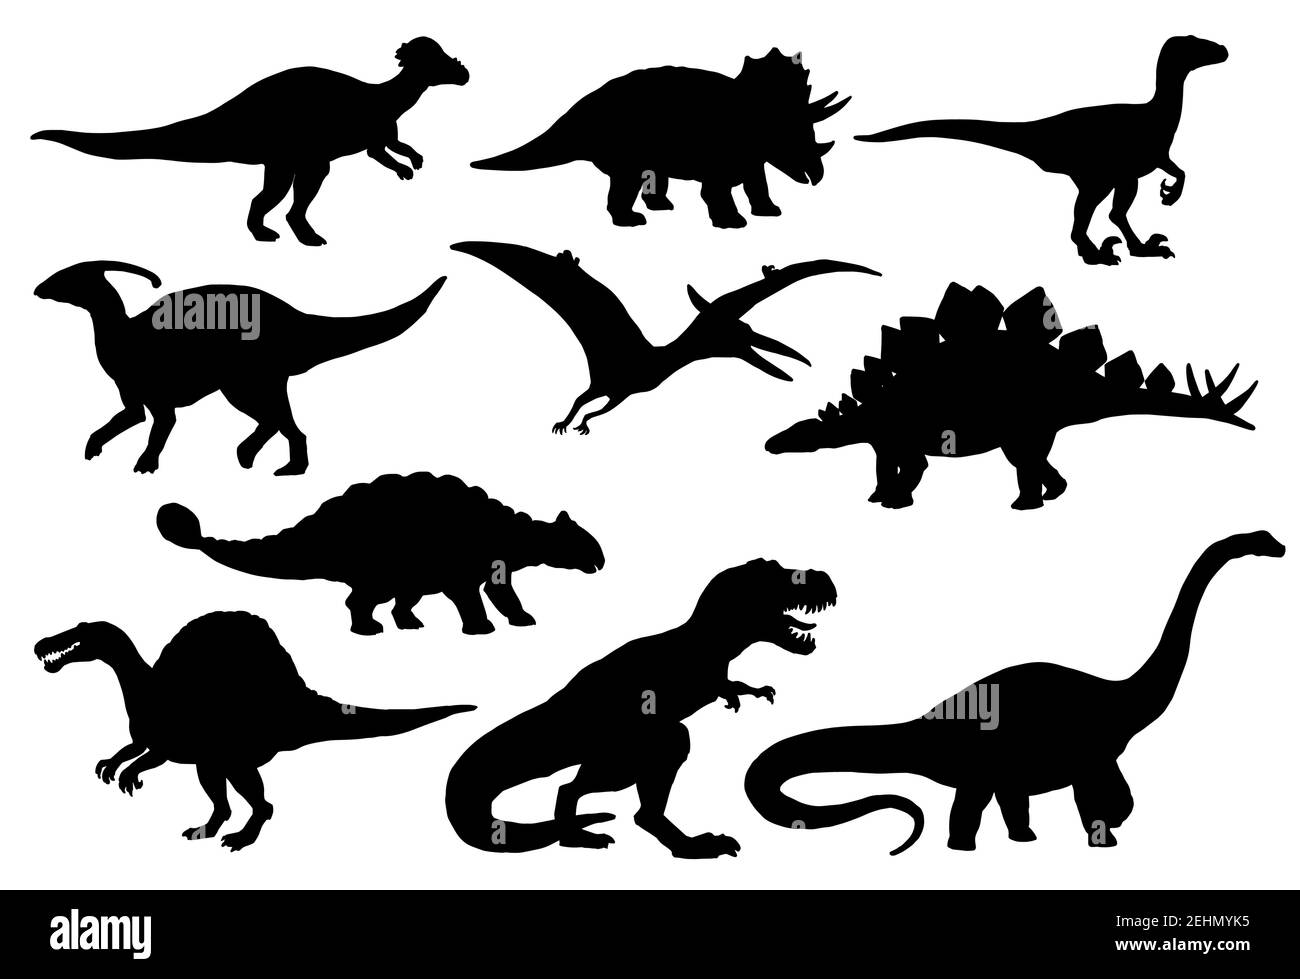 Dinosaurier und Jurassic Dino Monster Symbole. Vektor Silhouette von Triceratops oder T-rex, Brontosaurus oder Pterodactyl und Stegosaurus, pteranodon oder Cera Stock Vektor